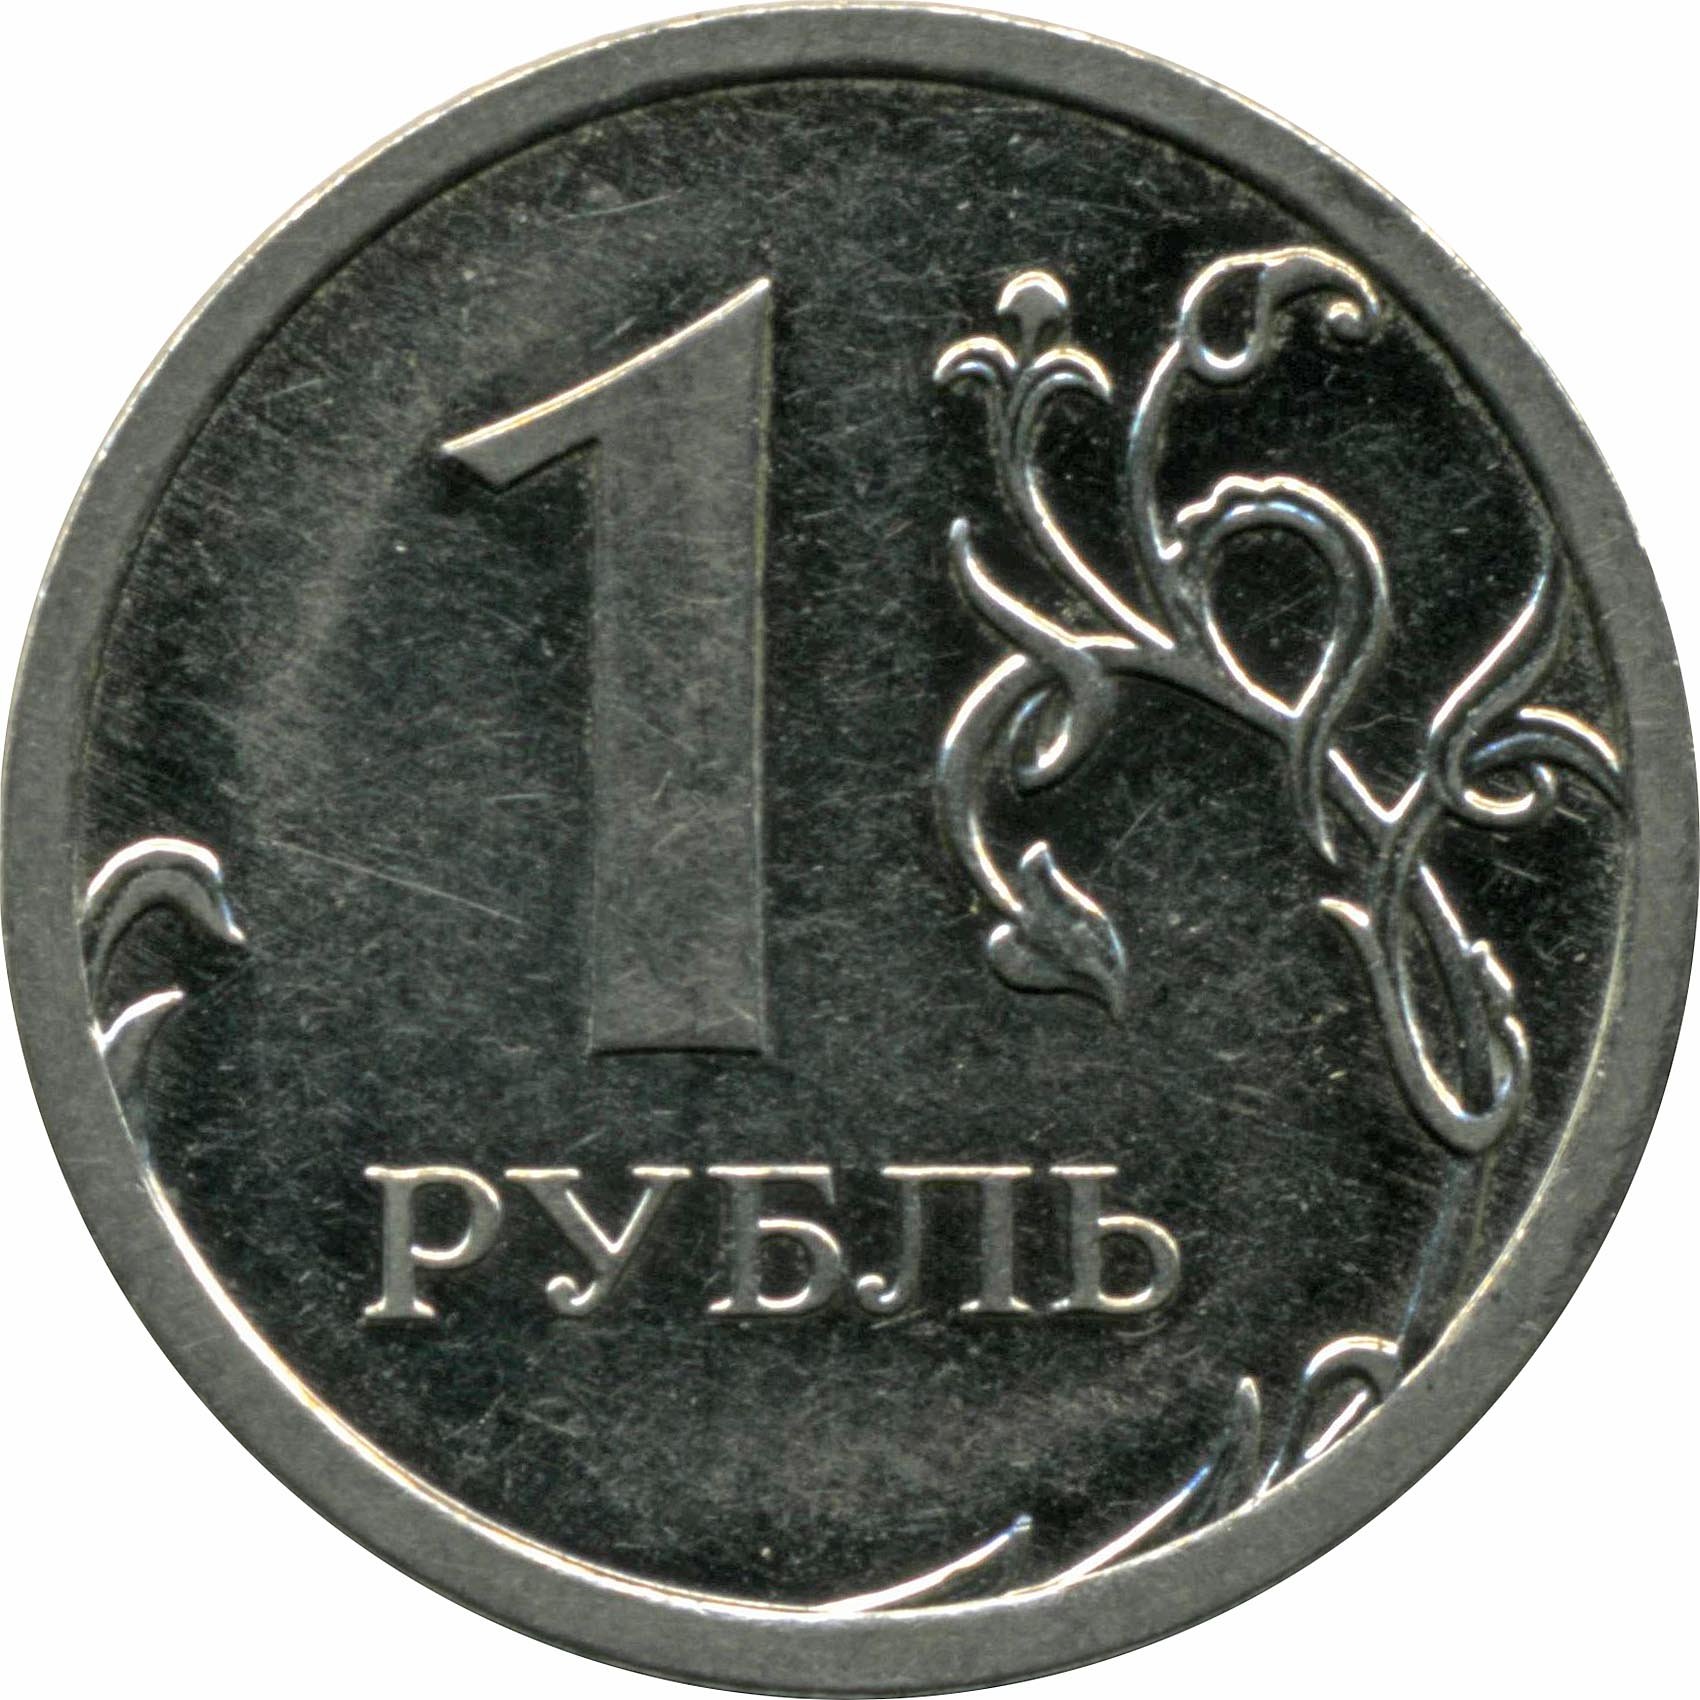 Игры за один рубль. 1 Рубль. Монета 1 рубль. Монета 1 рубль на прозрачном фоне. Монеты России 1 рубль.